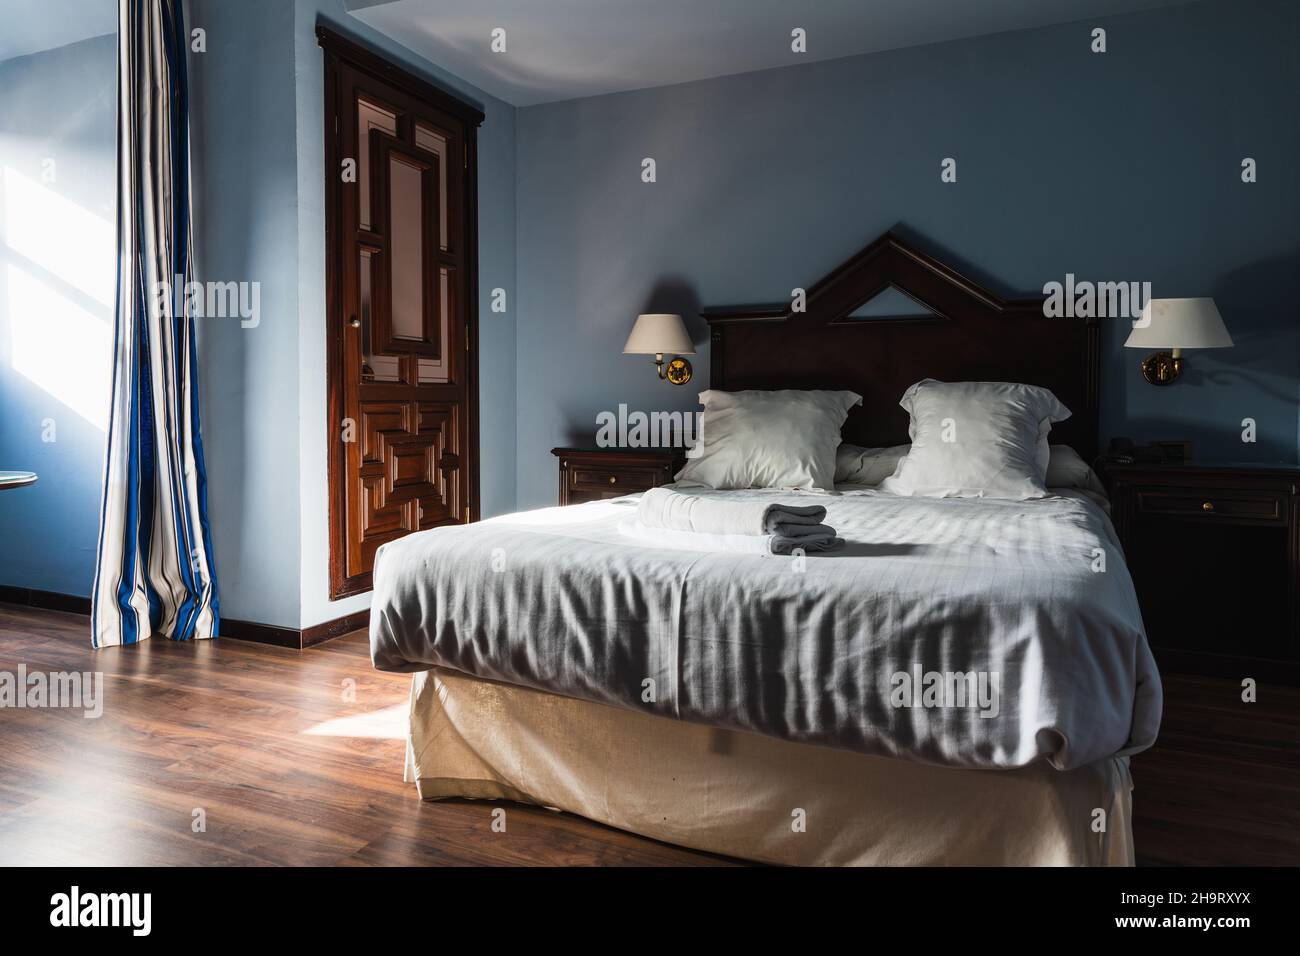 Hotelzimmer am Morgen mit Licht, das durch das Fenster kam, das Bett gemacht und die Handtücher zusammengerollt Stockfoto